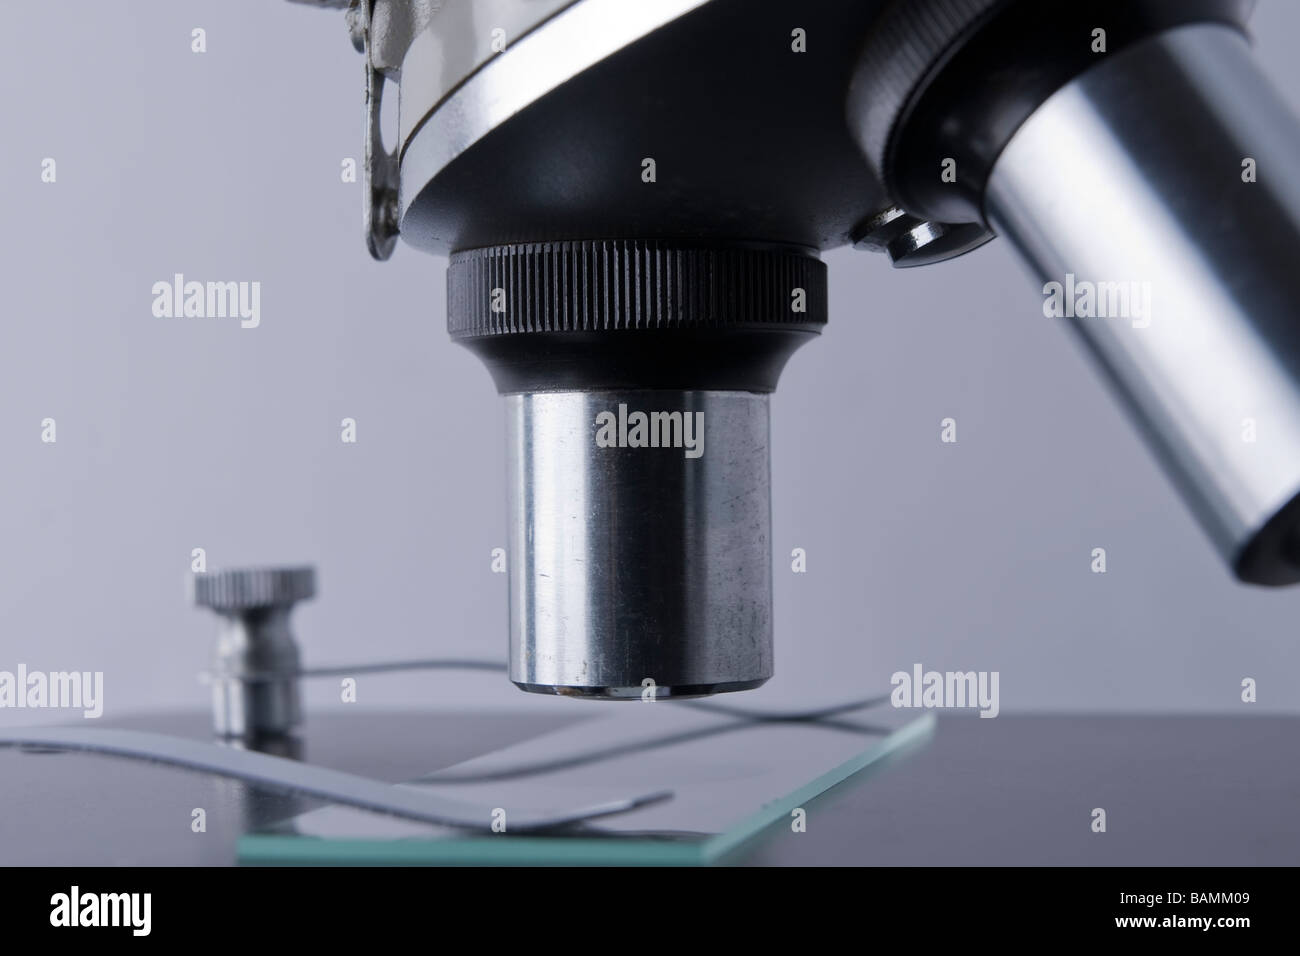 Seite Detail eines Mikroskops mit 2 Objektiven und Objektträger Stockfoto